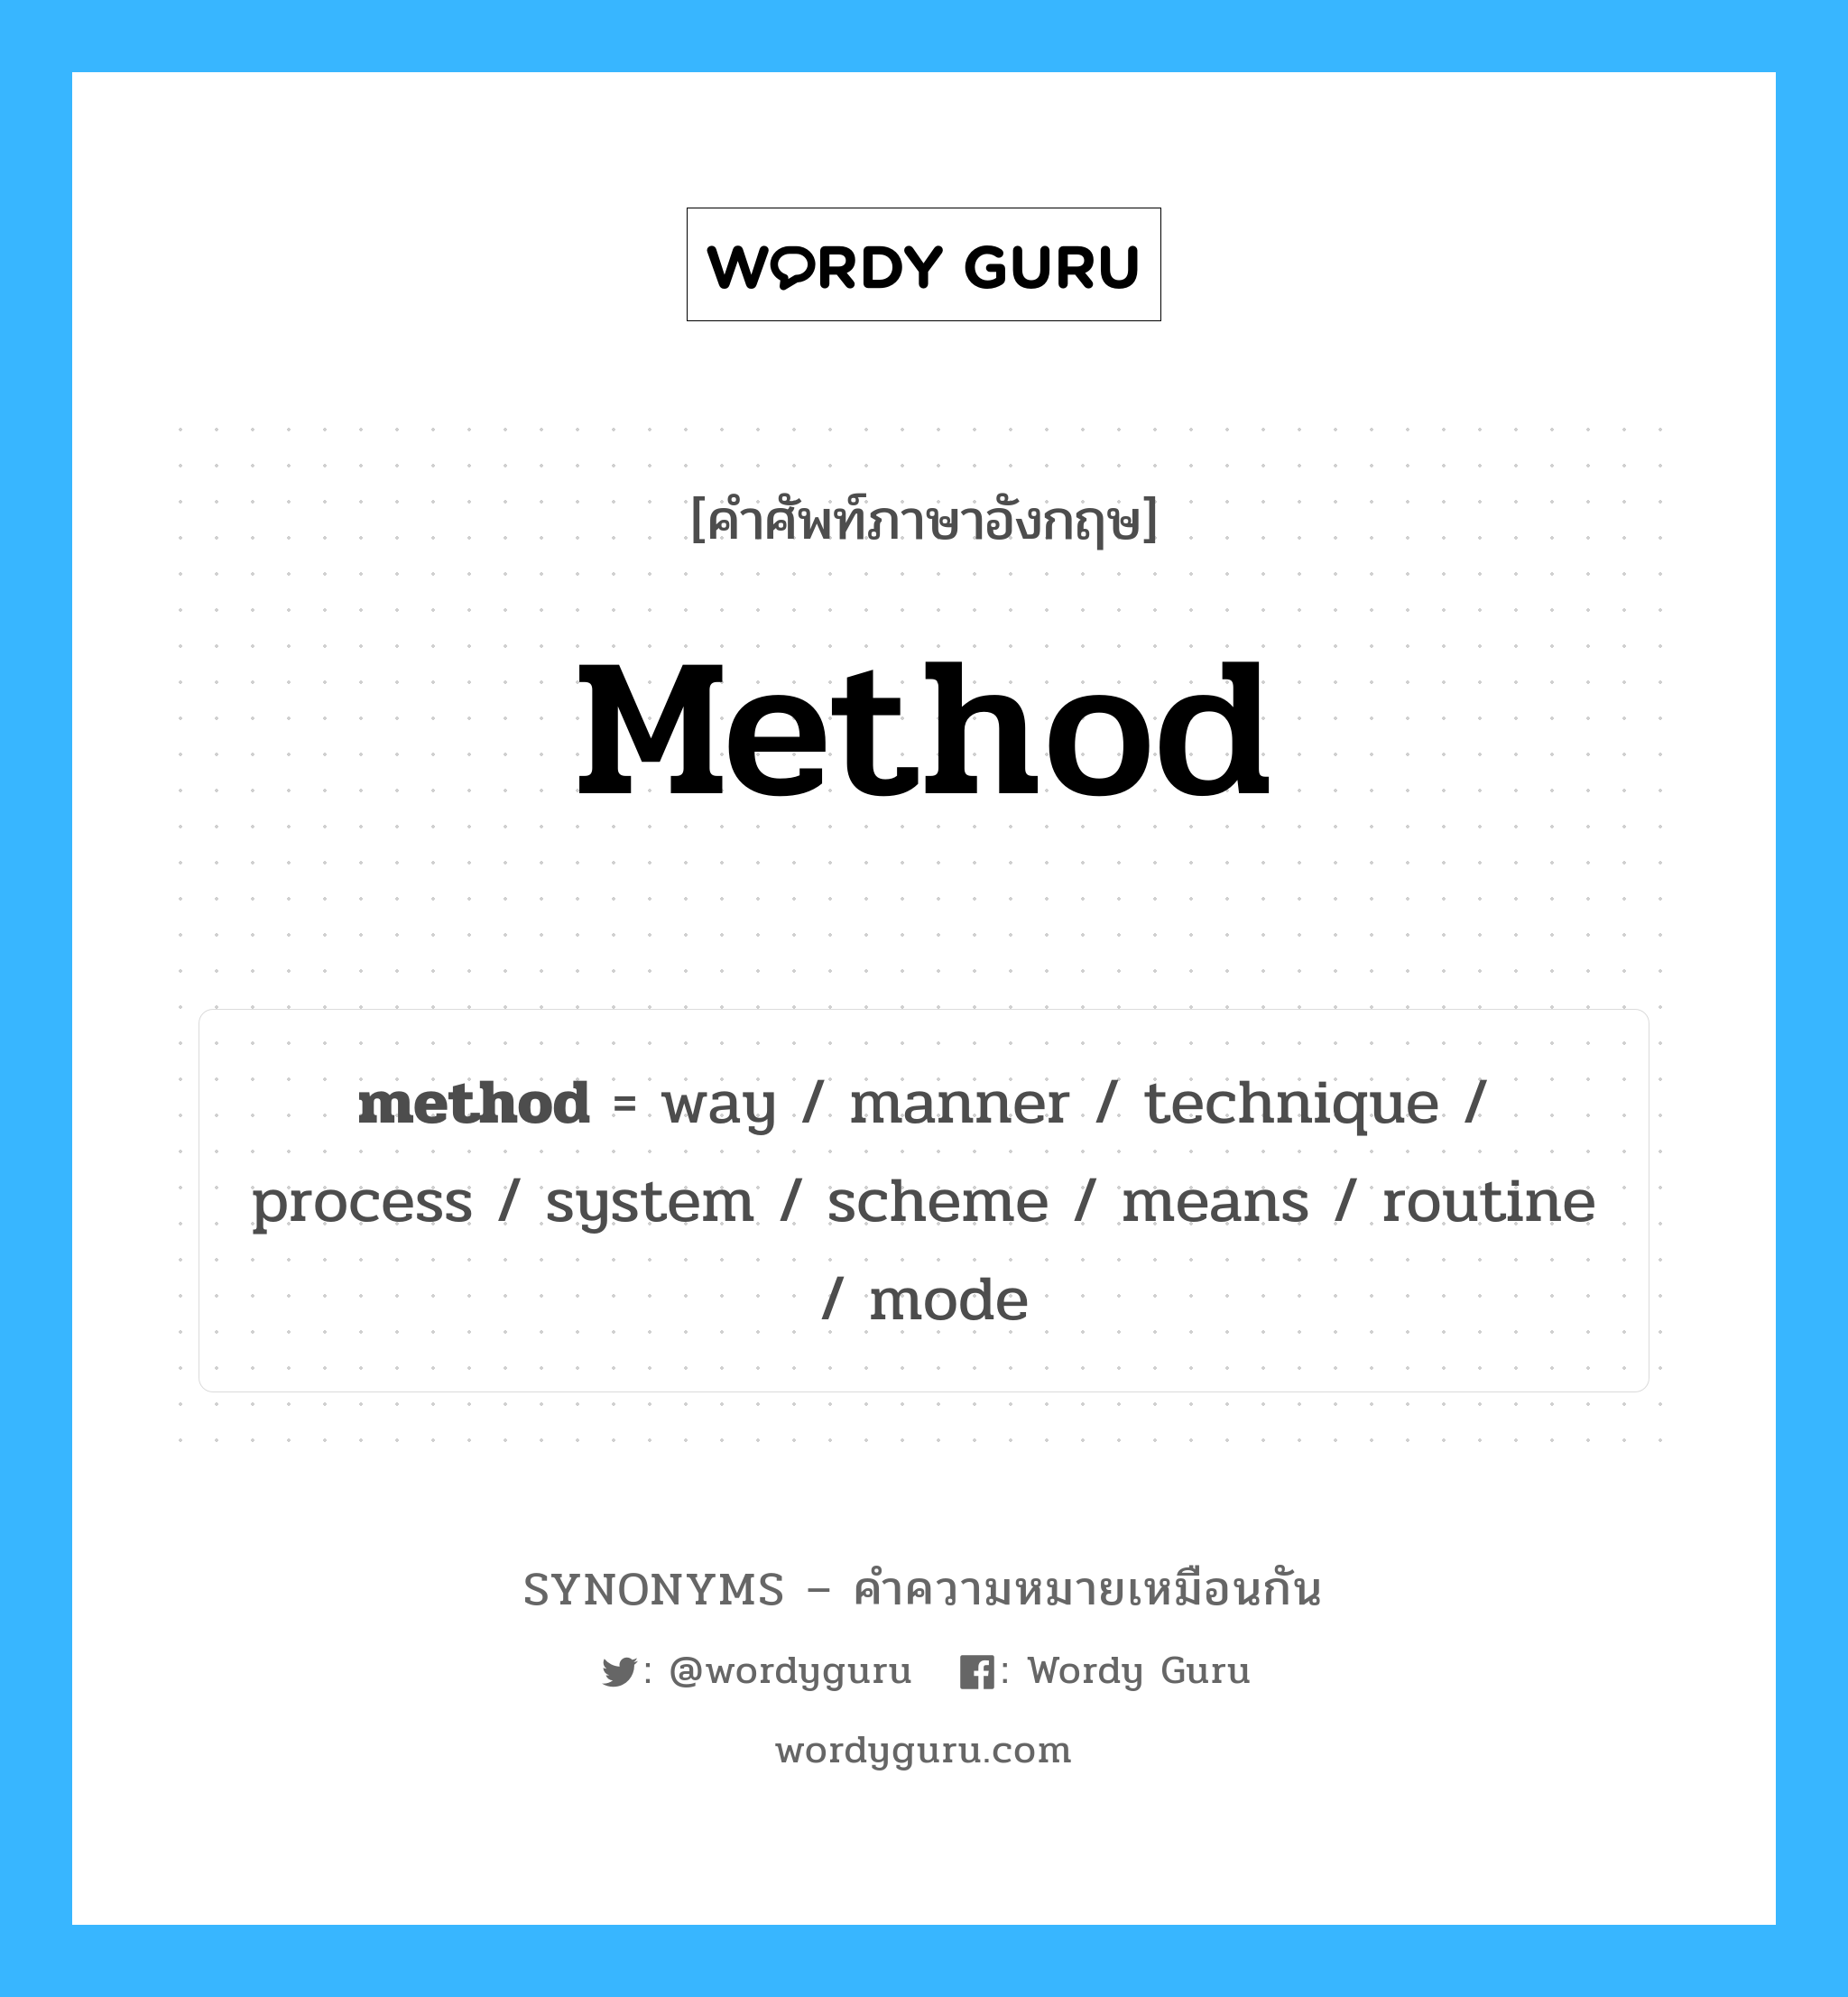 method เป็นหนึ่งใน process และมีคำอื่น ๆ อีกดังนี้, คำศัพท์ภาษาอังกฤษ method ความหมายคล้ายกันกับ process แปลว่า กระบวนการ หมวด process